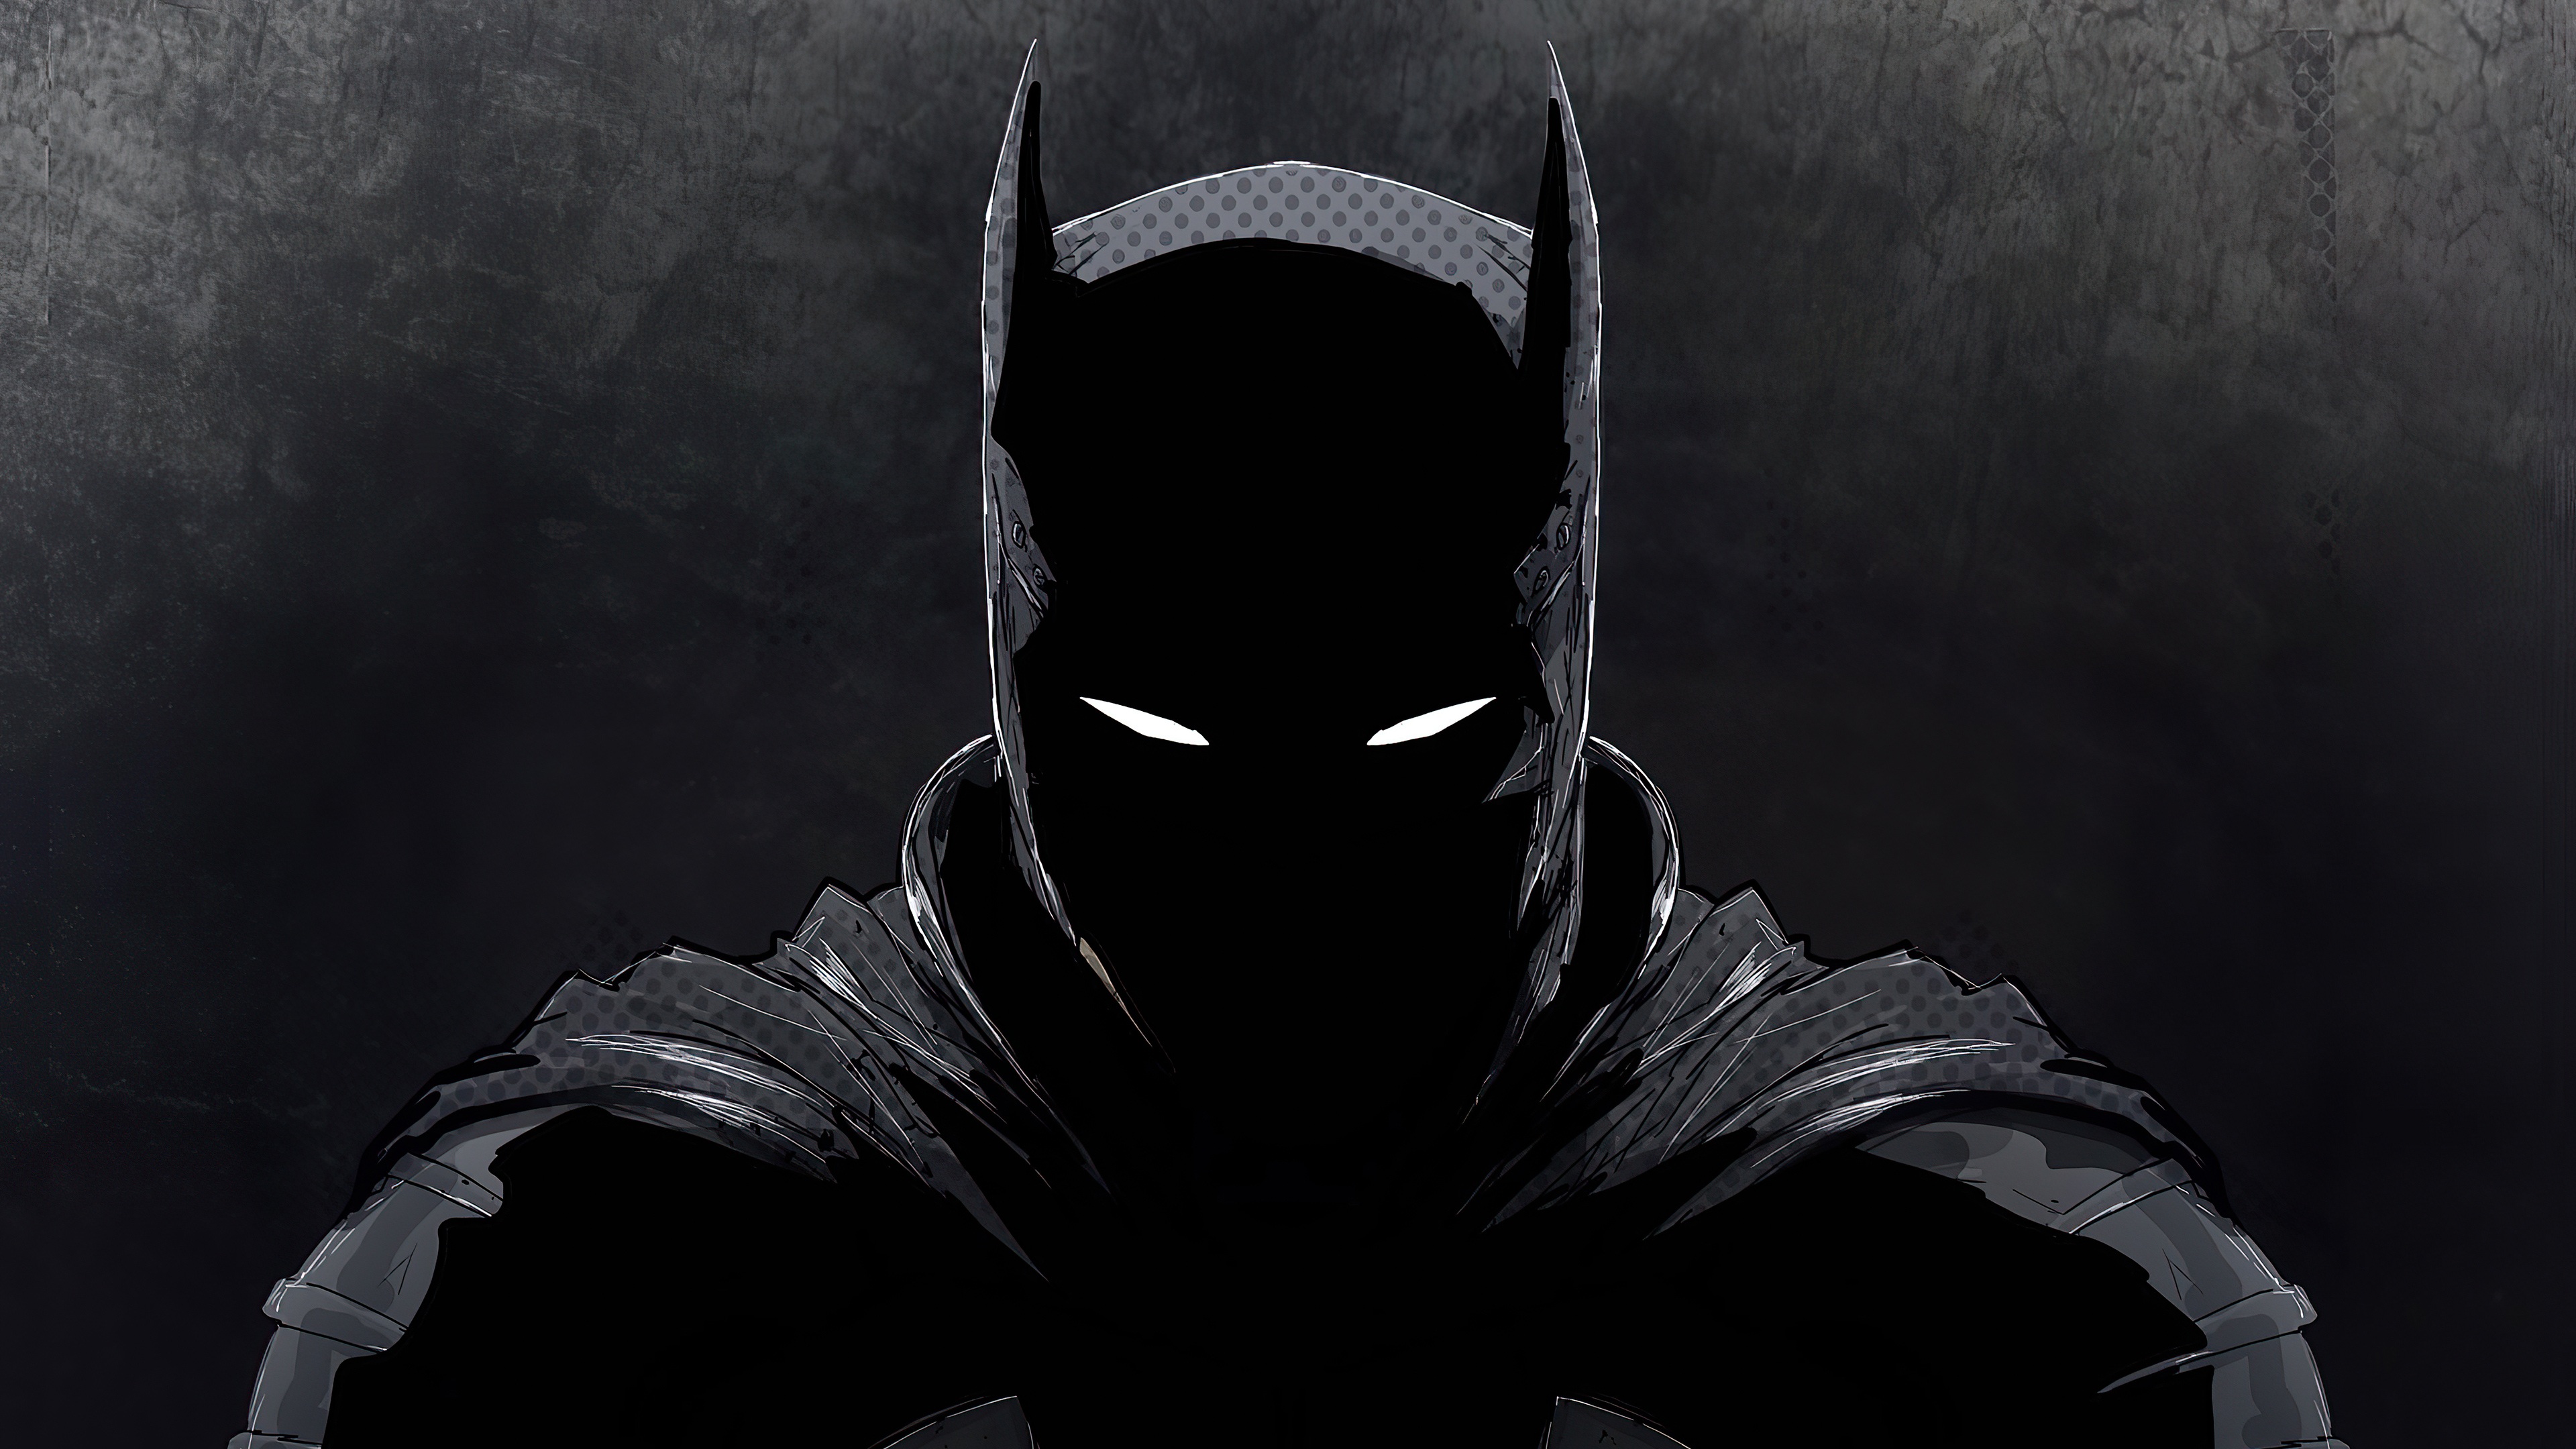 Batman: Bạn là fan của siêu anh hùng Batman chứ? Hãy tìm hiểu thêm về một trong những nhân vật huyền thoại nhất của DC với những hình ảnh đặc sắc, độc đáo trong bộ sưu tập này.